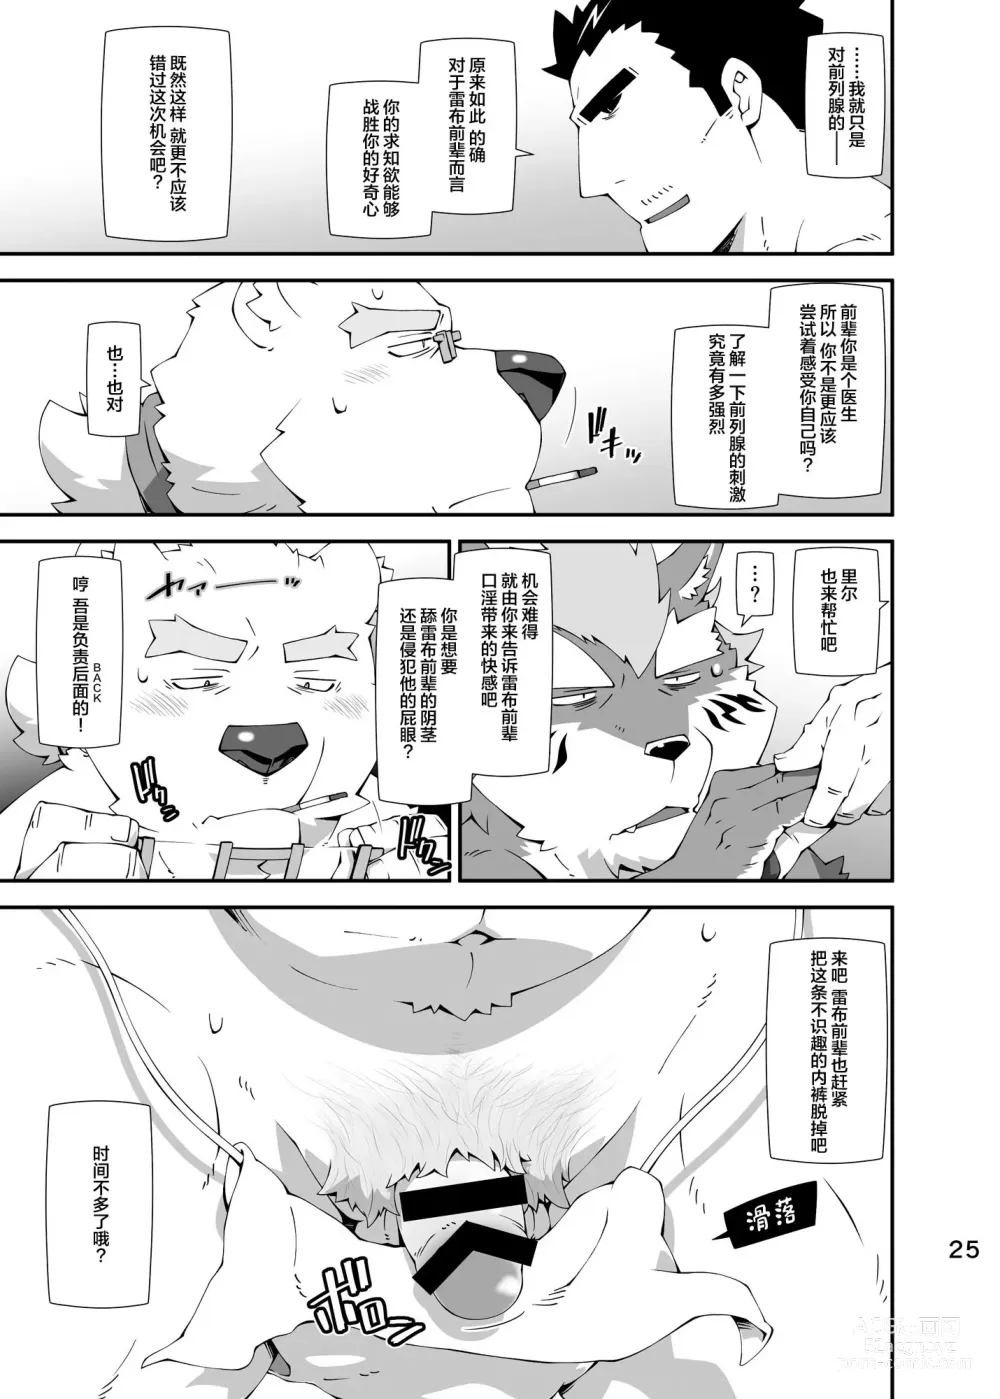 Page 24 of doujinshi Shirokuma to Fe